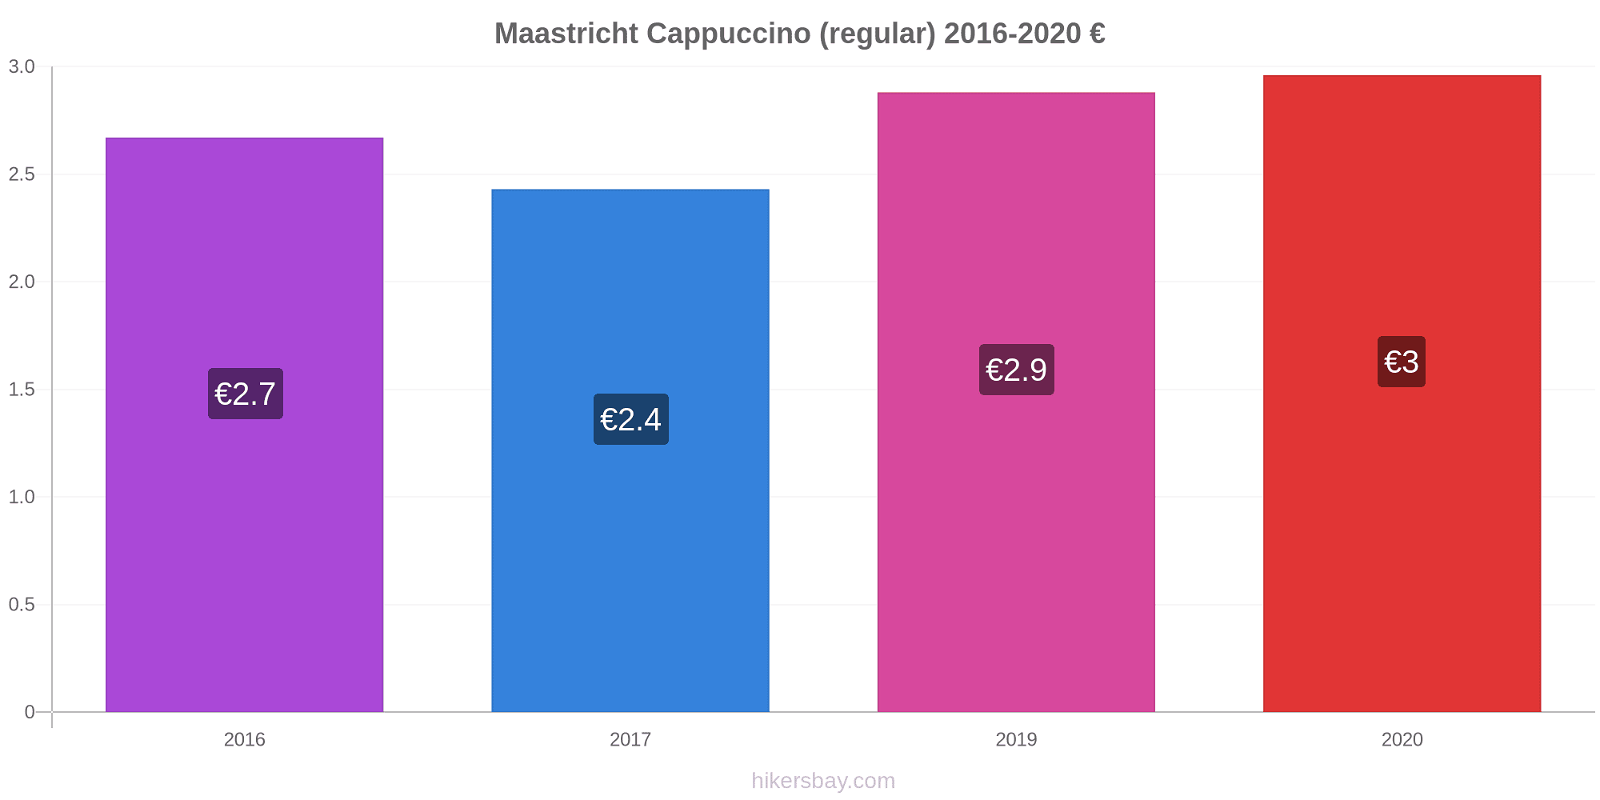 Maastricht price changes Cappuccino (regular) hikersbay.com